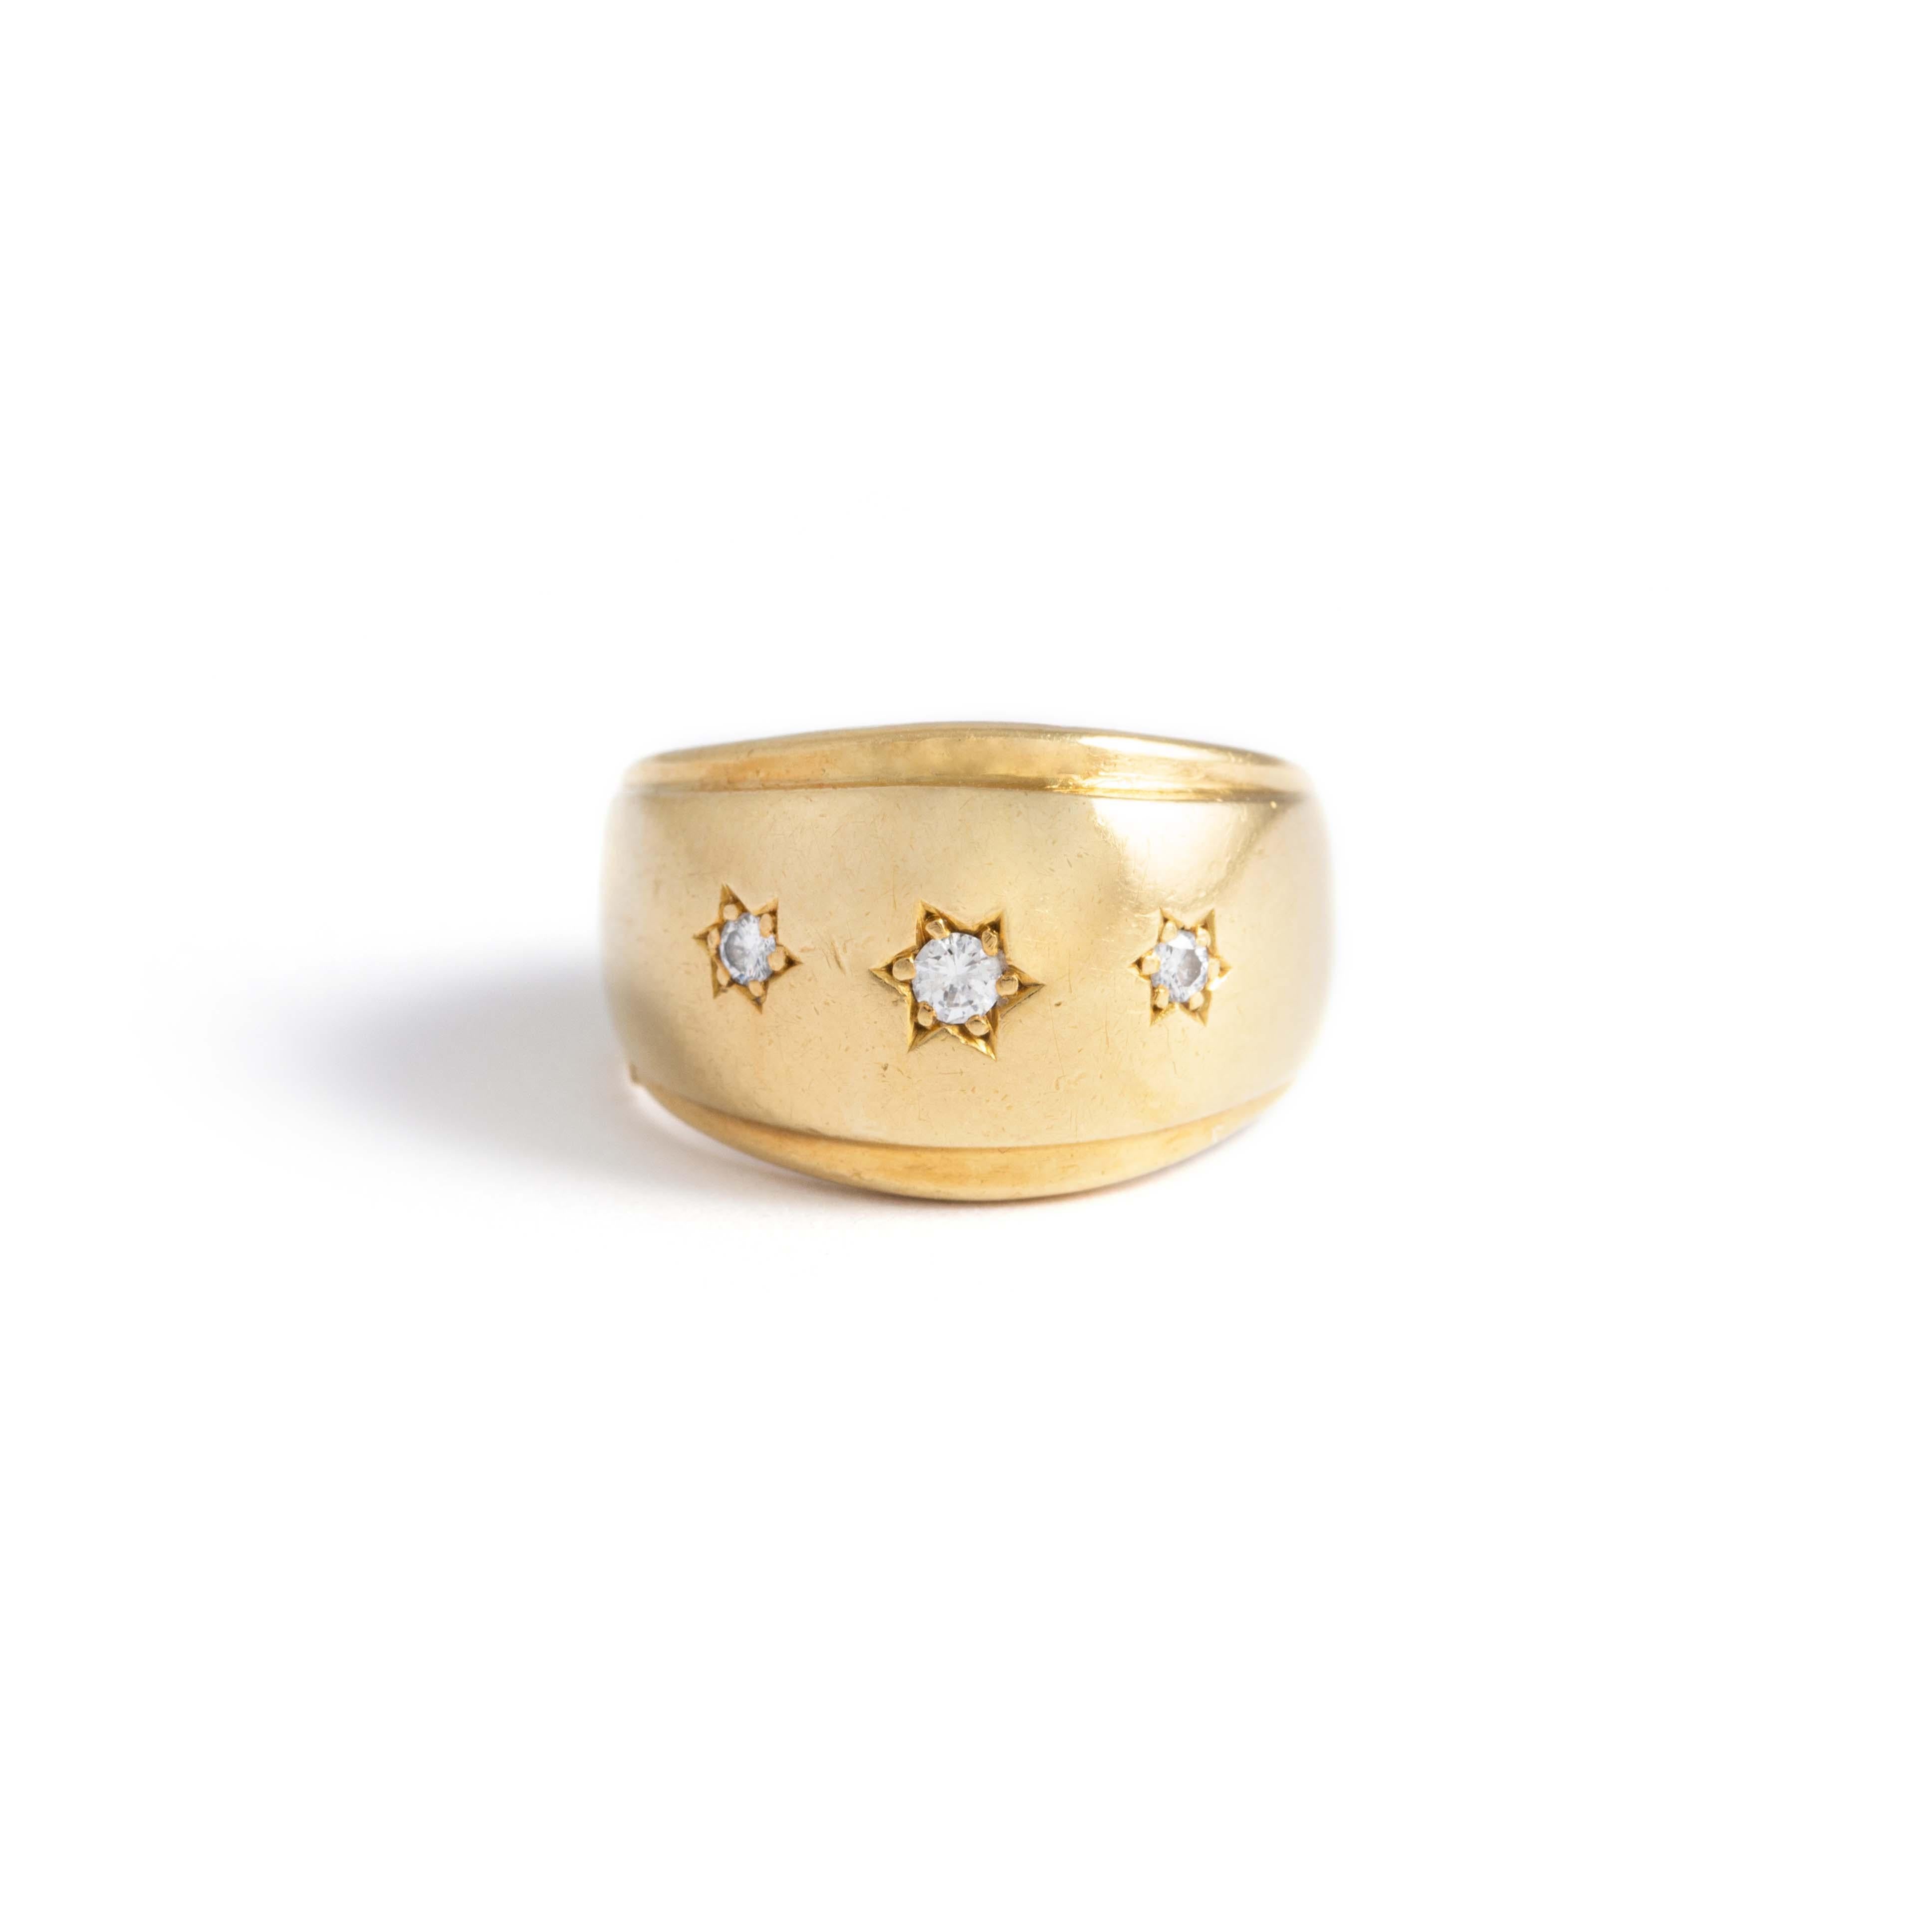 Bombé-Ring aus 18 Karat Gelbgold, besetzt mit drei Diamanten im Rundschliff.
Um 1950.
Bruttogewicht: 5,71 Gramm.